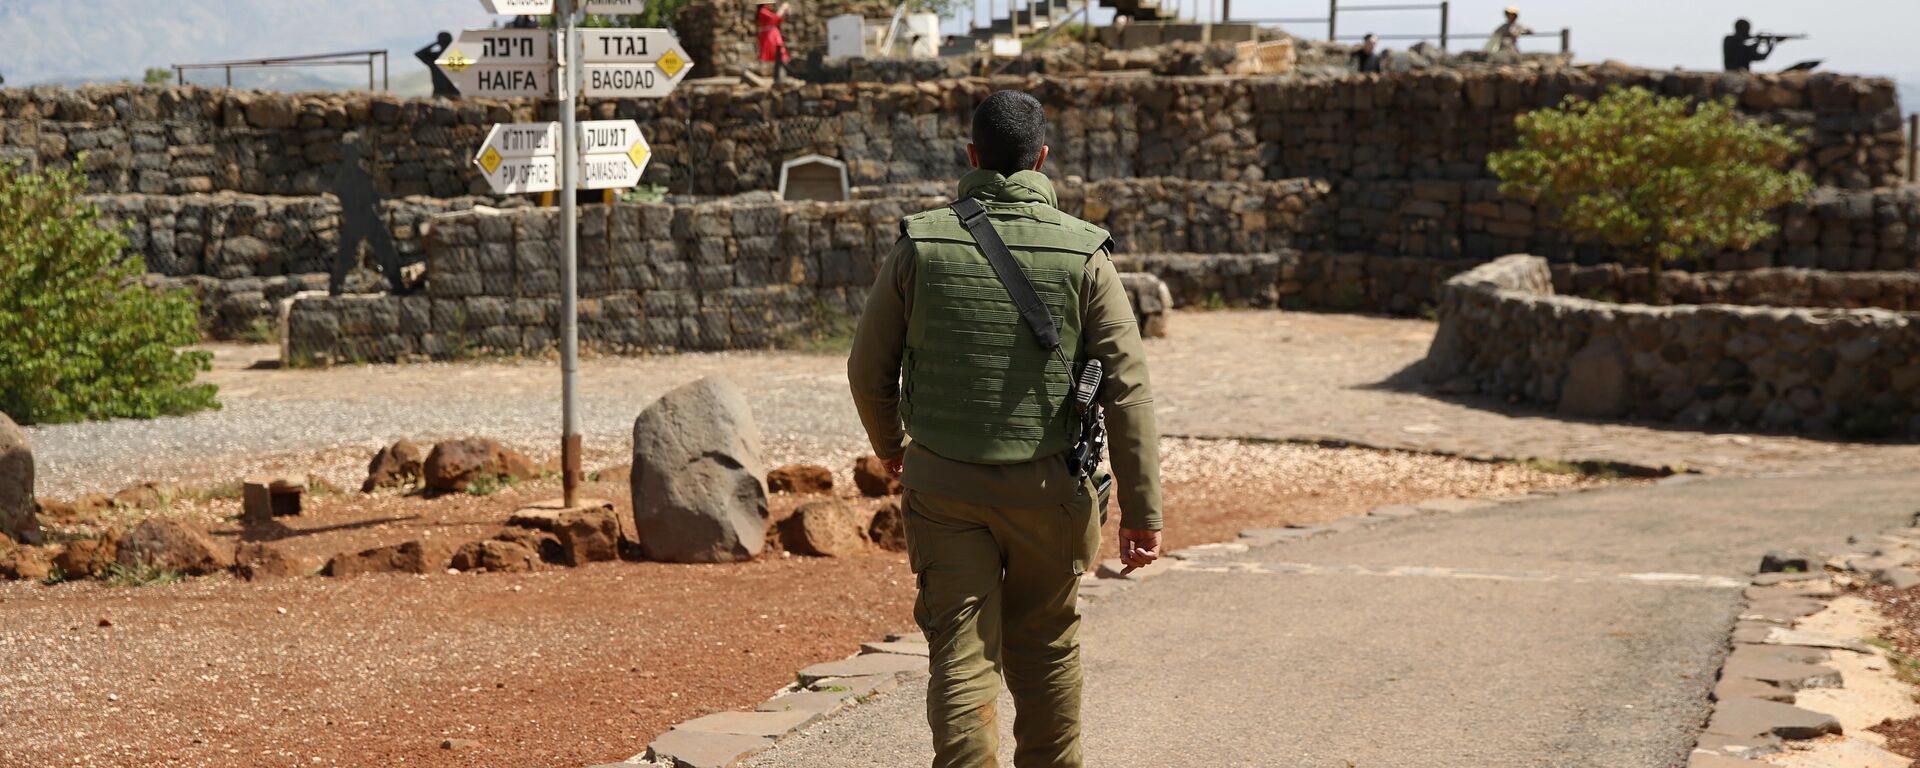 Soldado israelense caminha em antigo posto militar, usado para visitantes para ver as Colinas de Golã, perto da fronteira com a Síria, em 10 de maio de 2018 - Sputnik Brasil, 1920, 27.12.2021